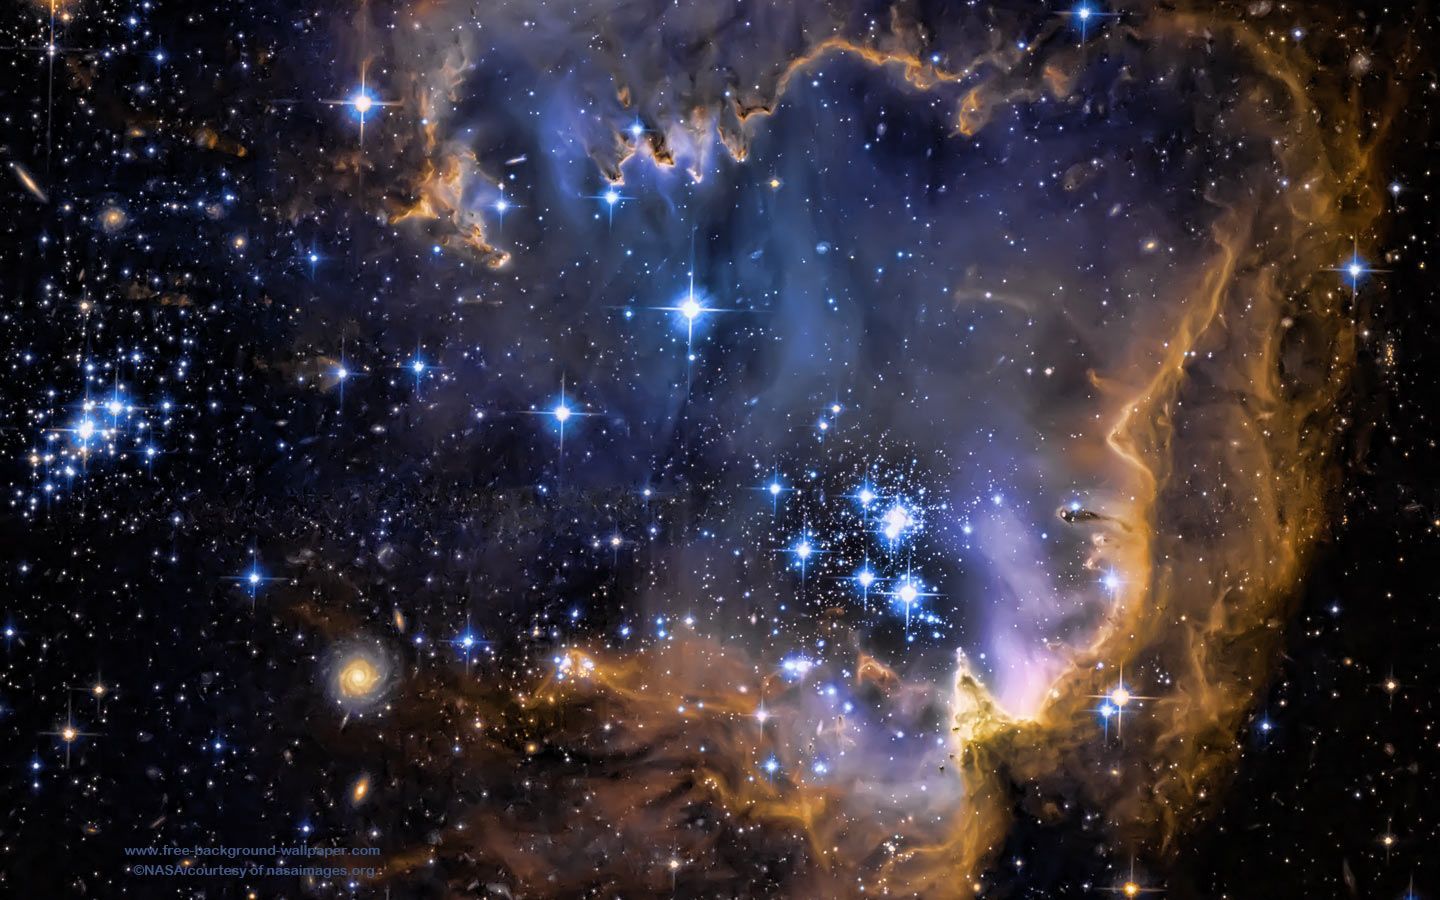 Galaxy Infant Stars Stars Background - 1440x900 pixels